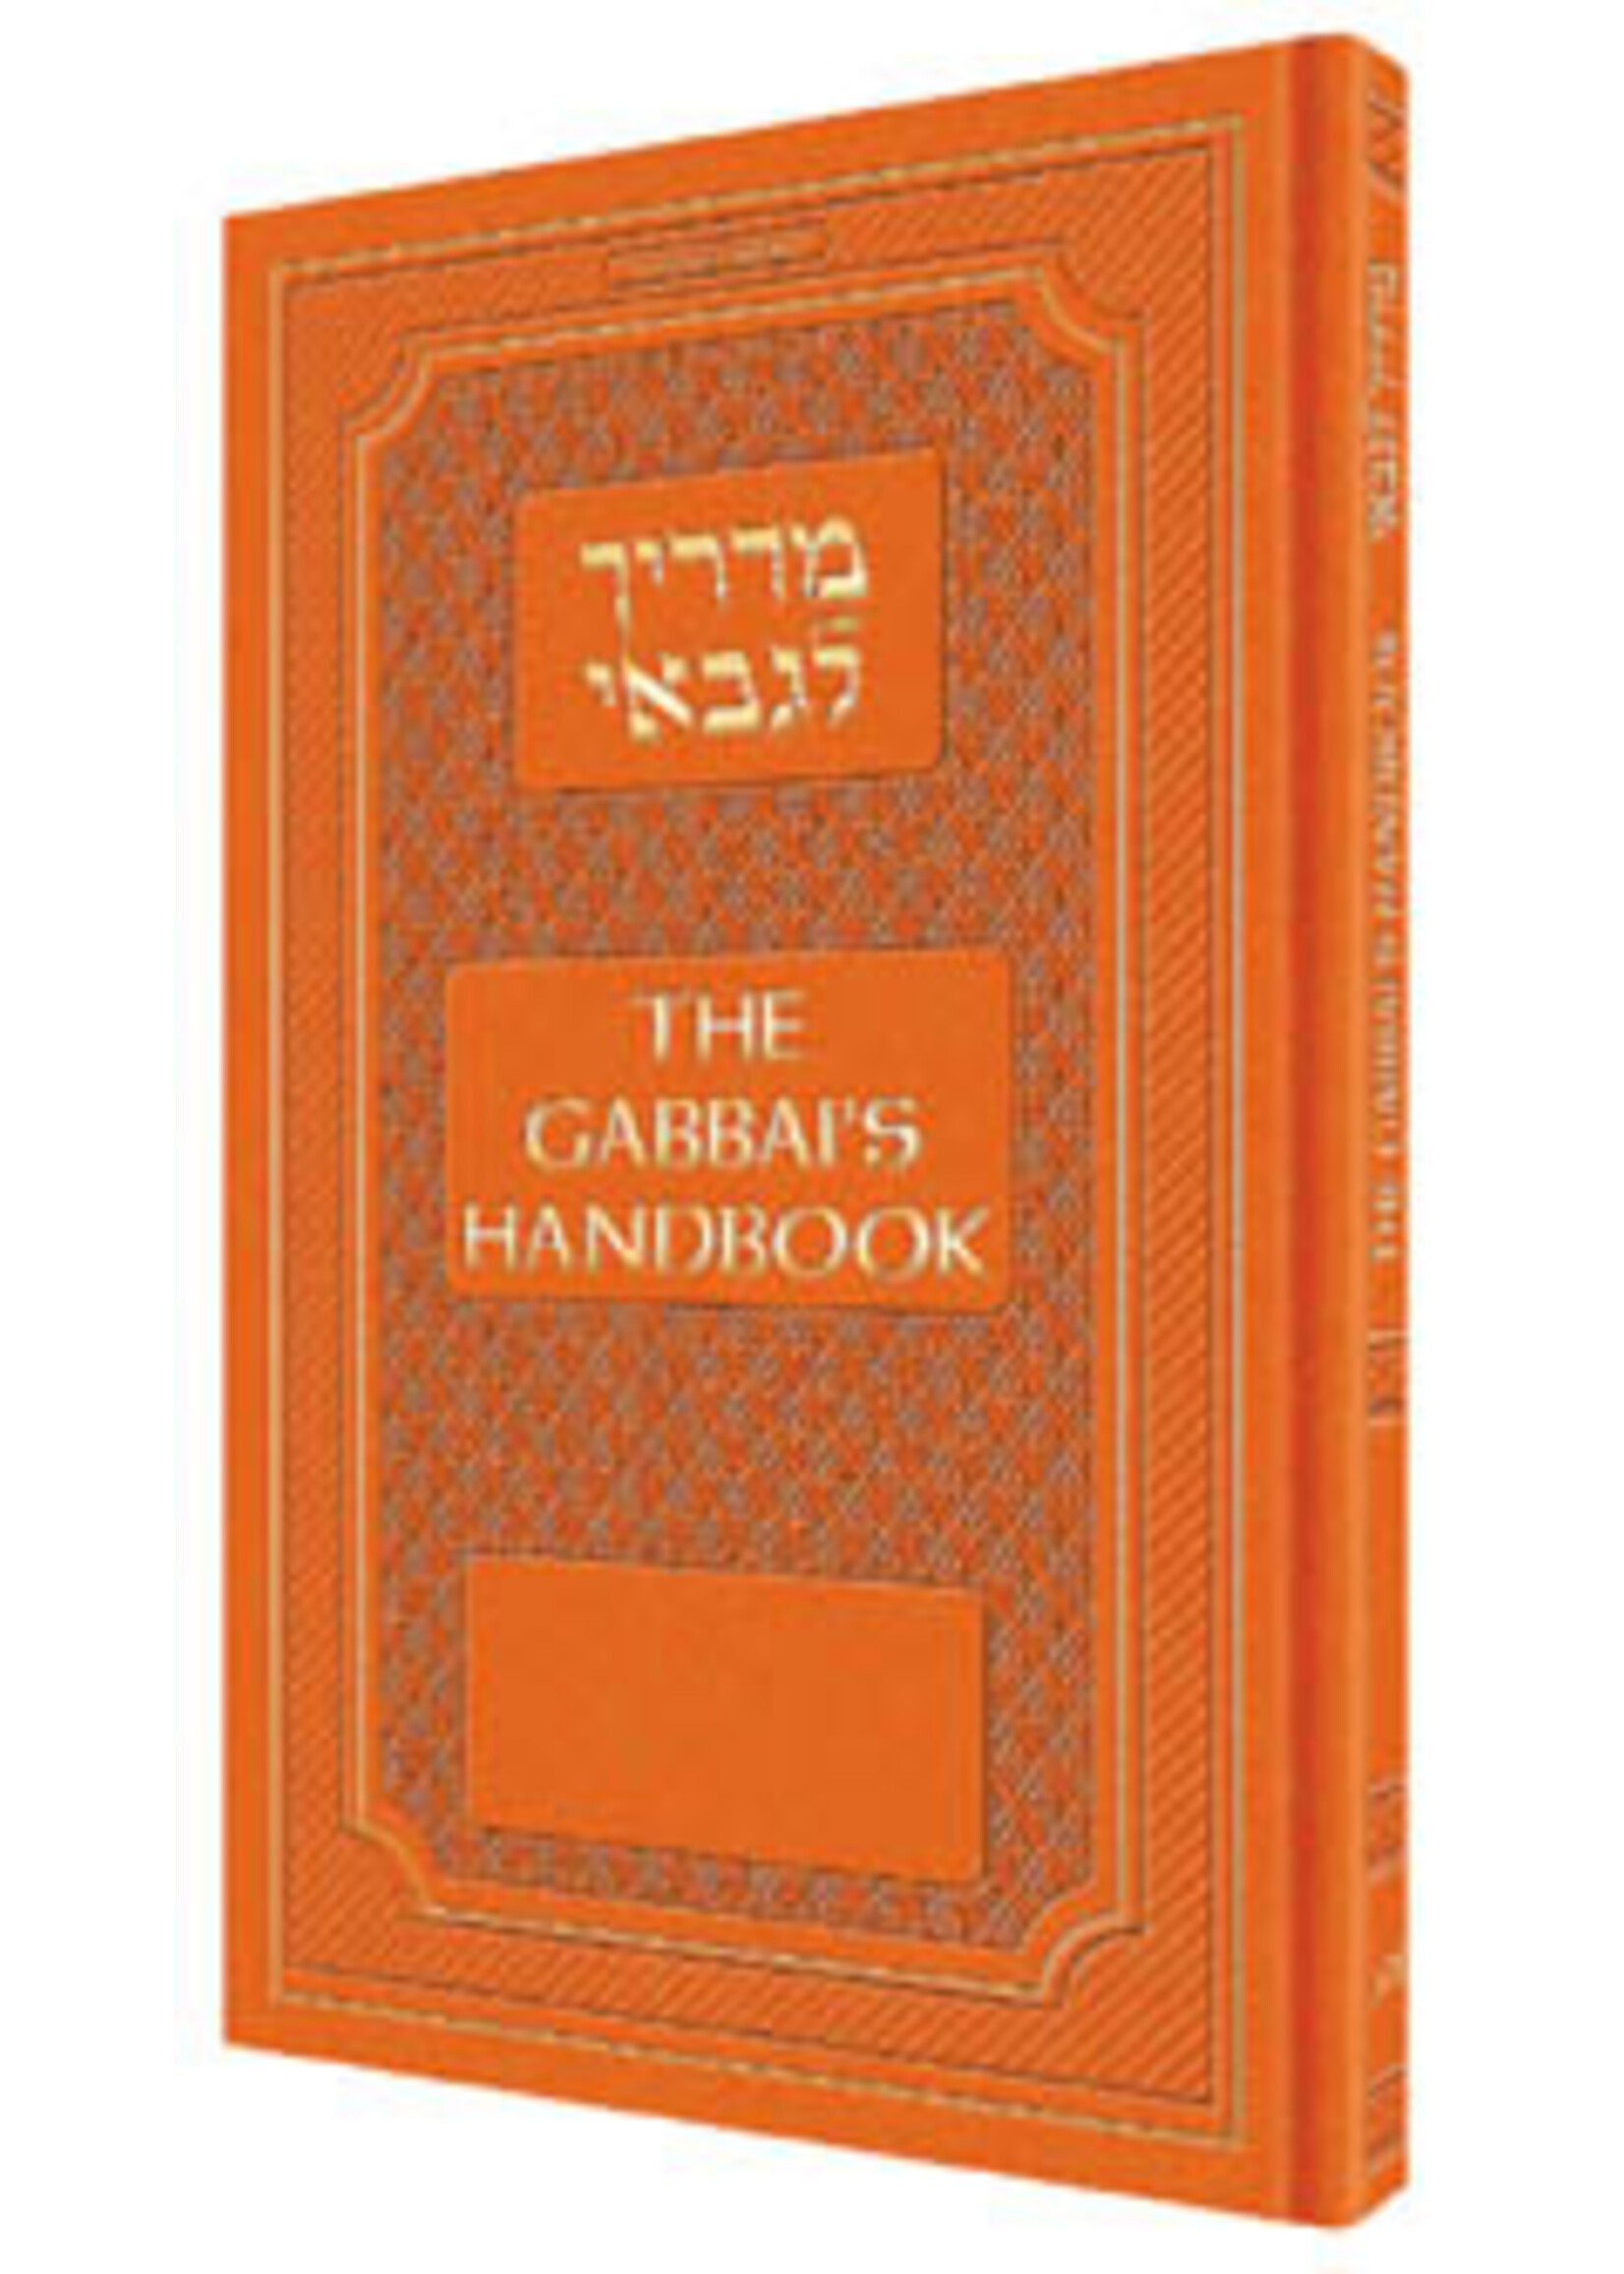 THE GABBAI'S HANDBOOK